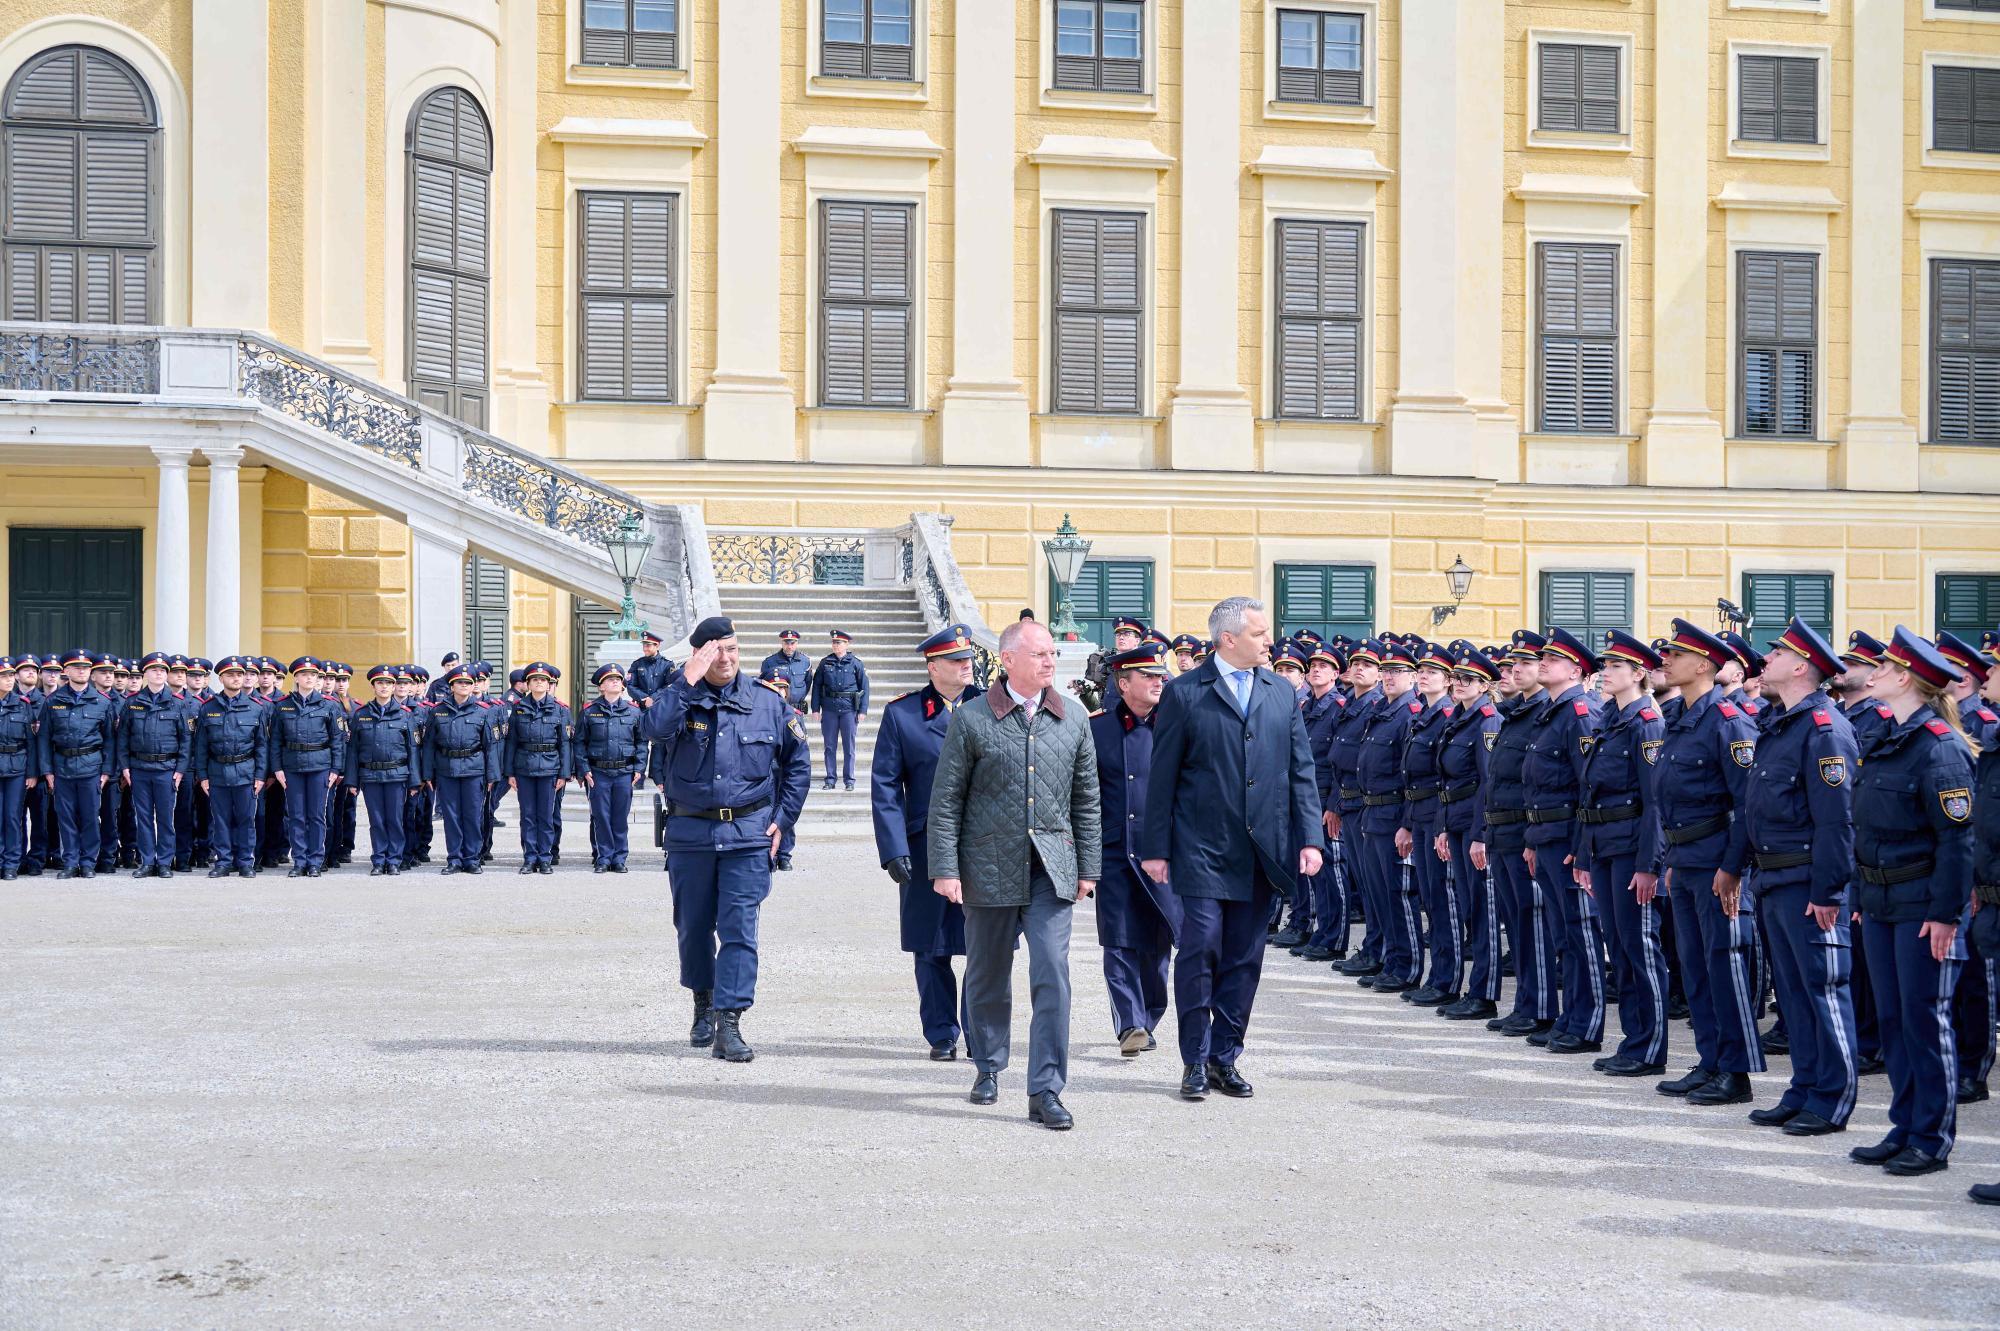 Innenminister bei Ausmusterung: 1.000 neue Polizisten für Wien geplant